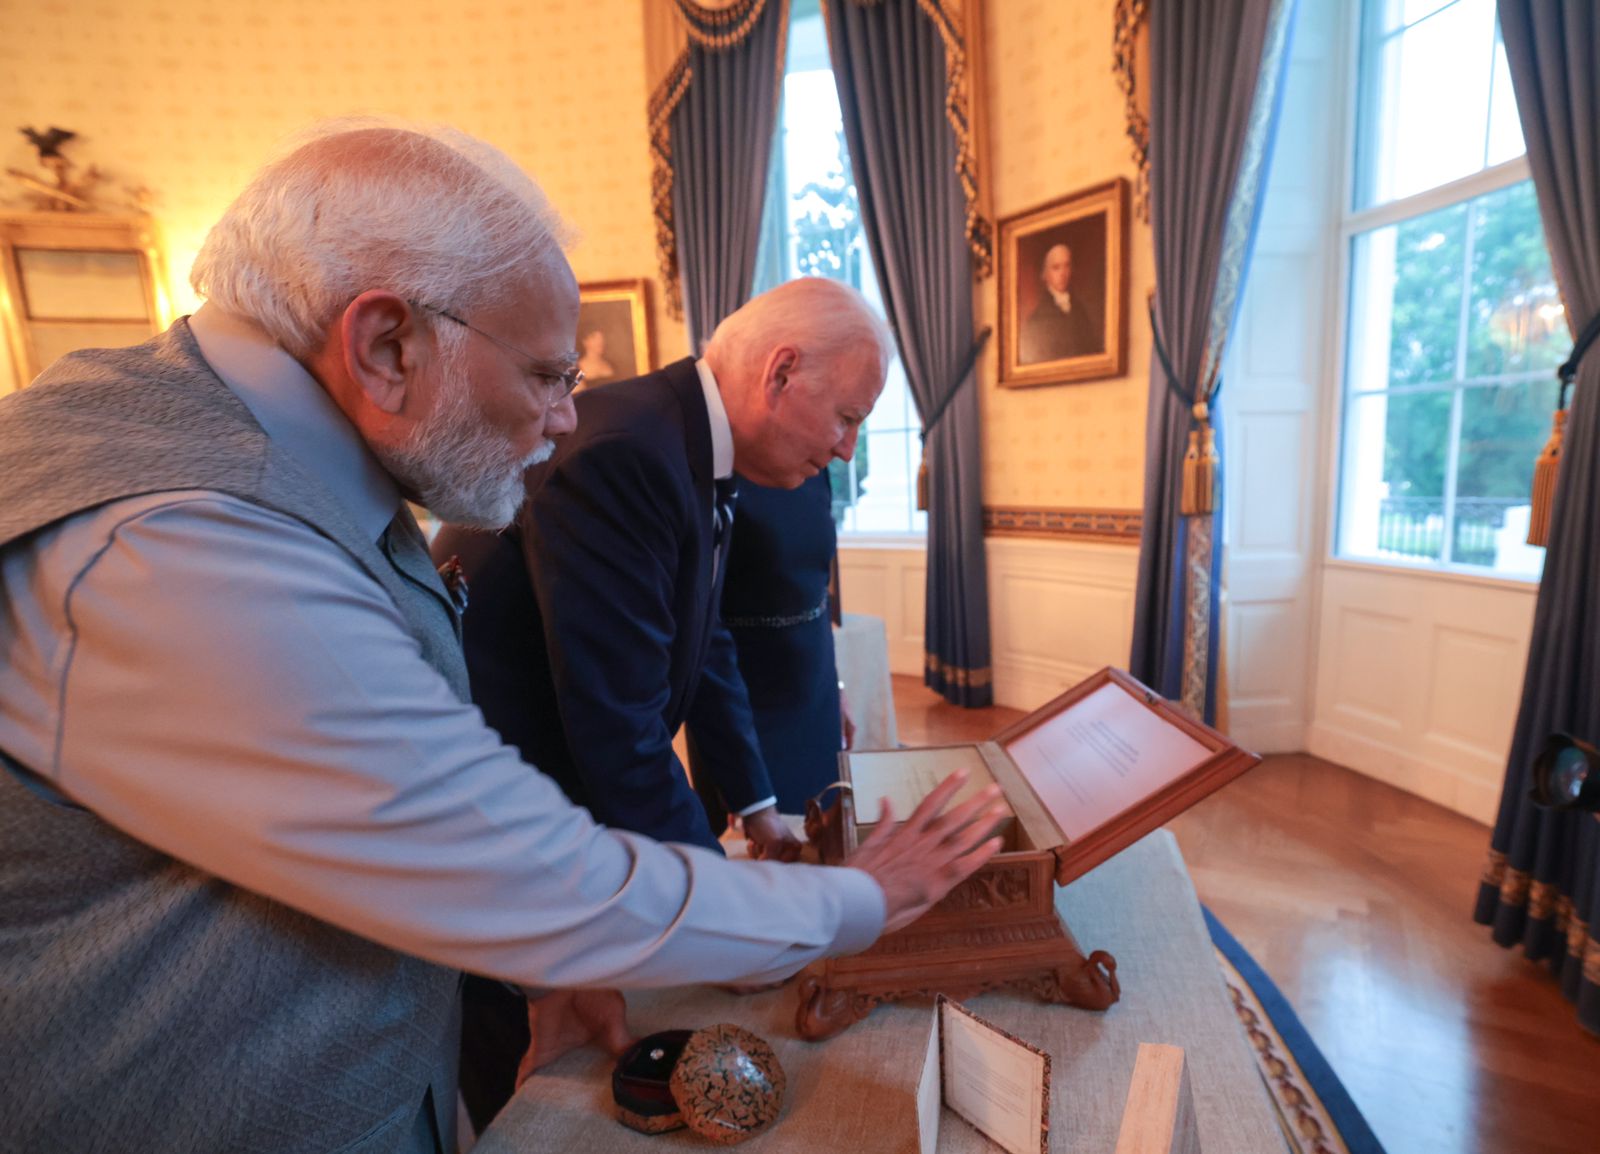 PM Modi's gifts to Joe Biden